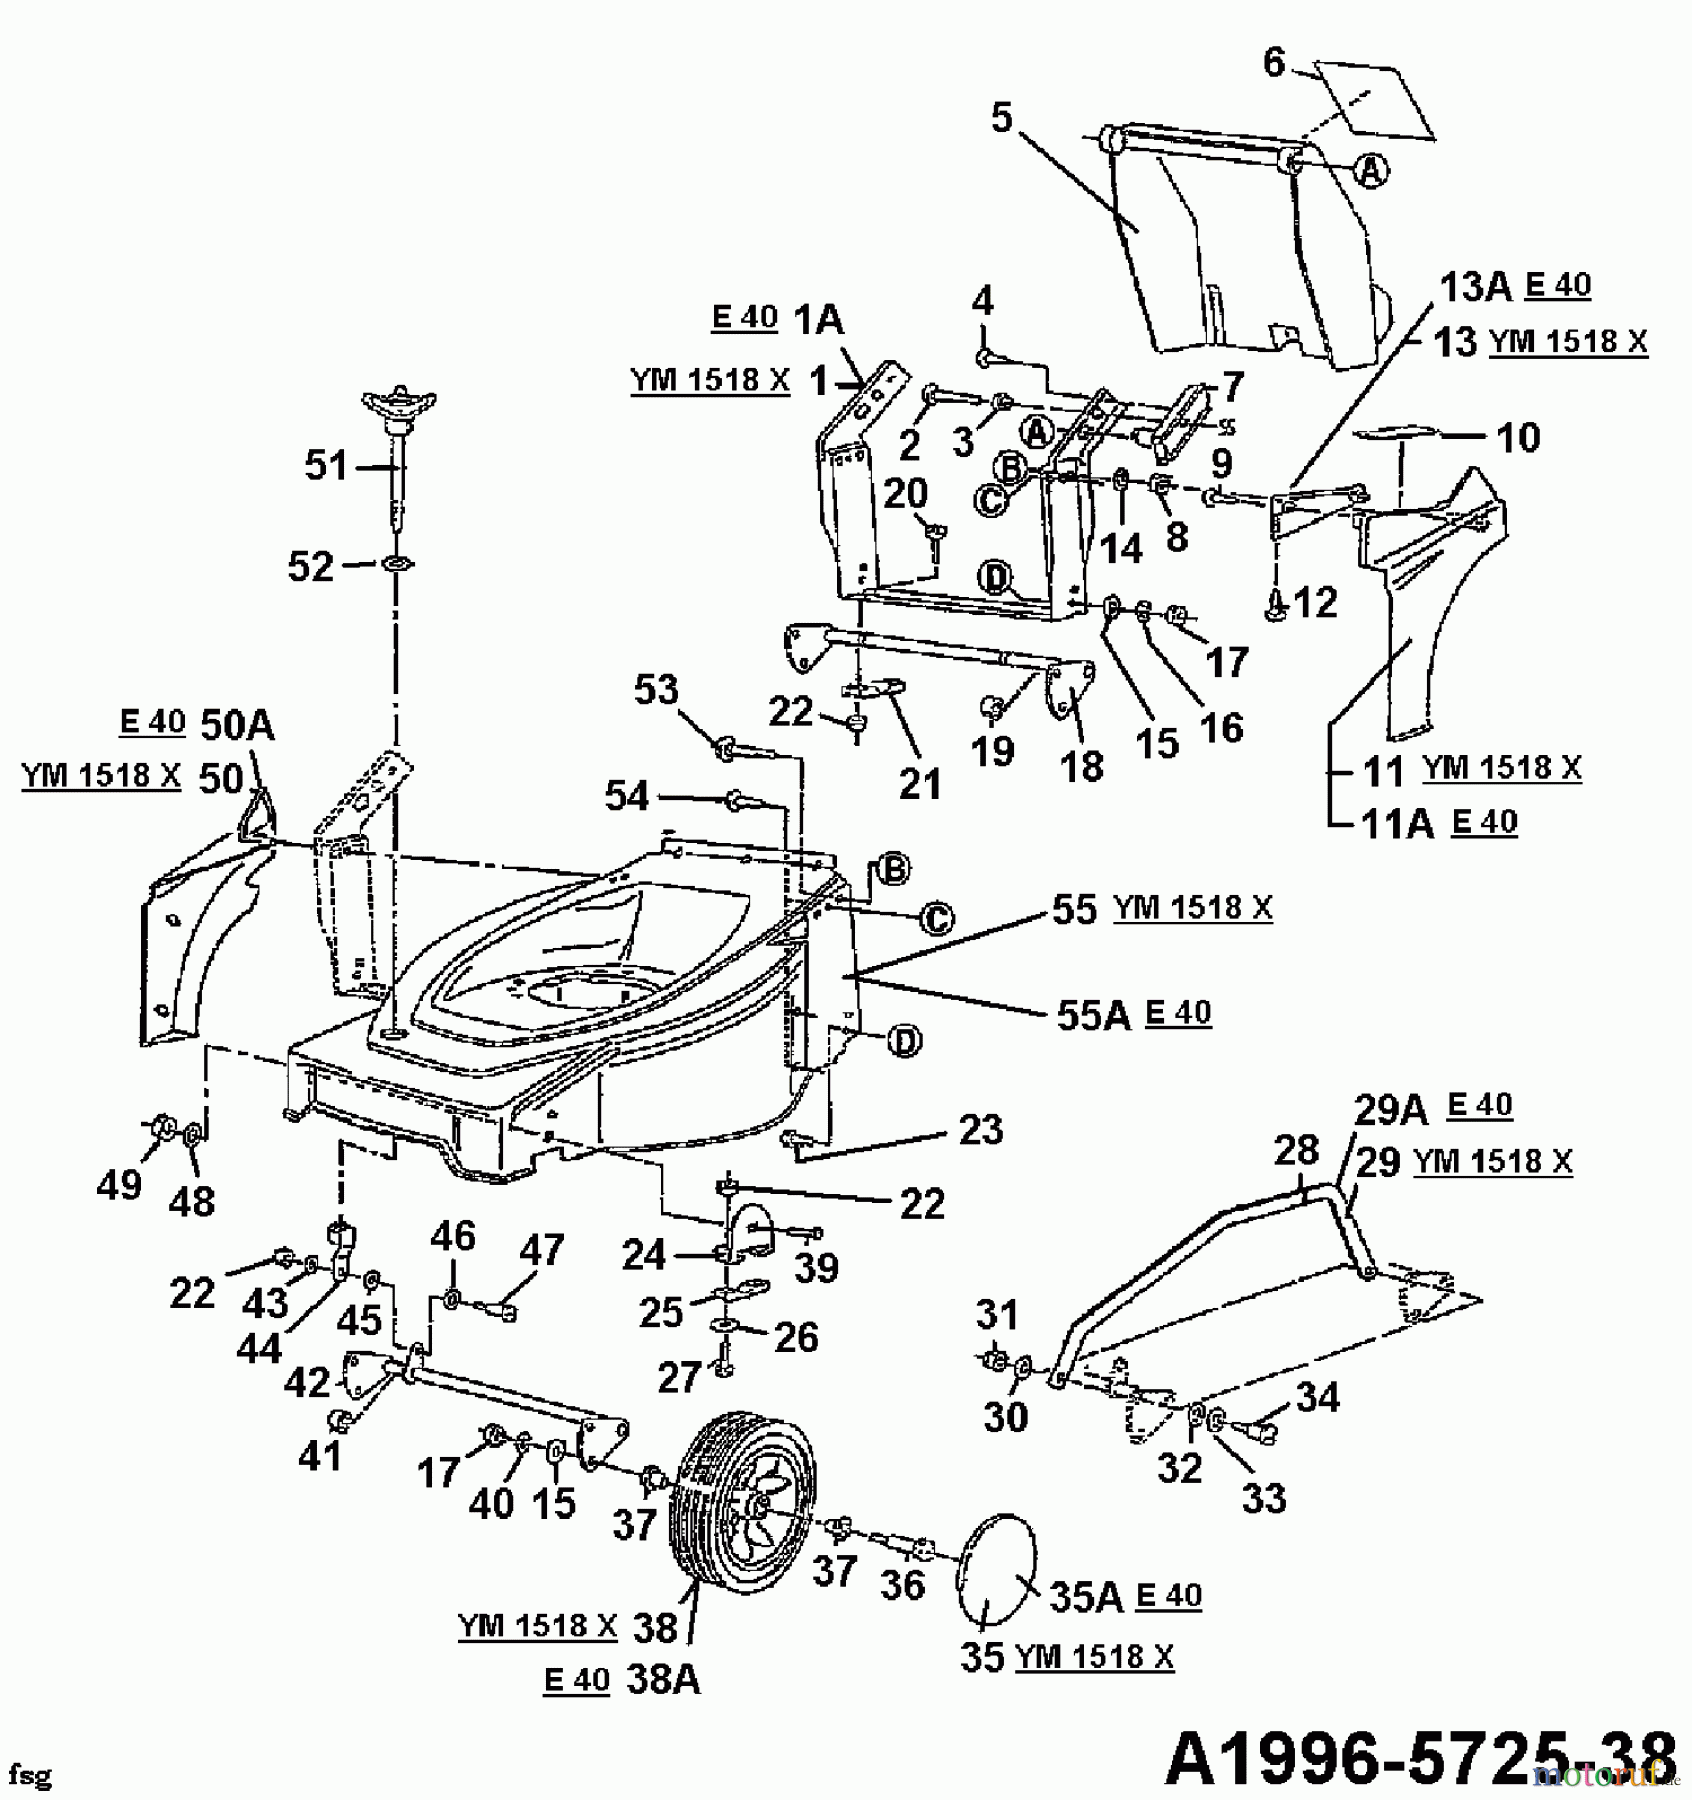  MTD Tondeuse électrique E 40 04030.04  (1996) Roues avant, Réglage hauteur de coupe